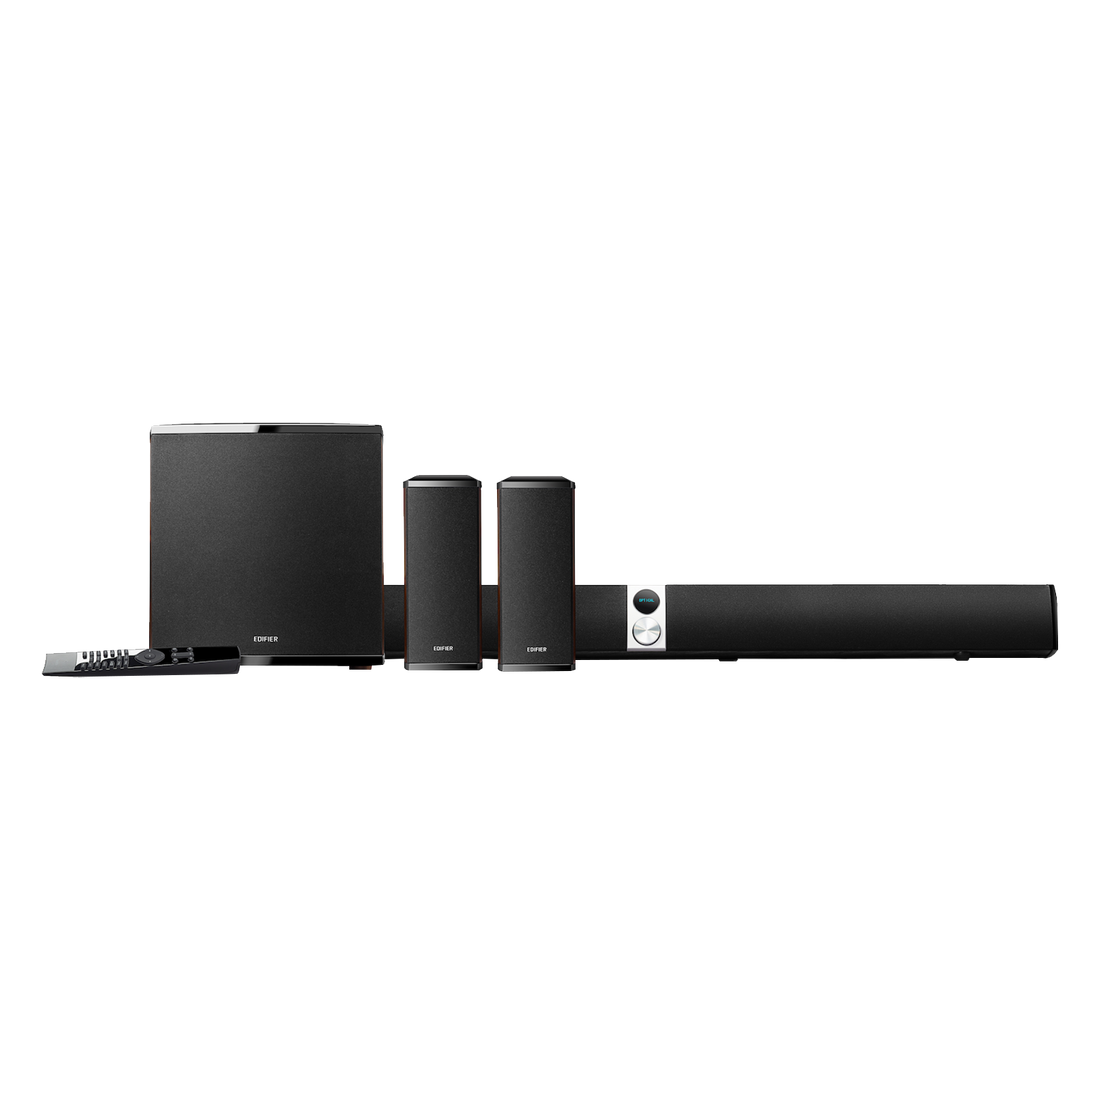 Système de cinéma maison avec barre de son 4.1 canaux S90HD avec Dolby et DTS